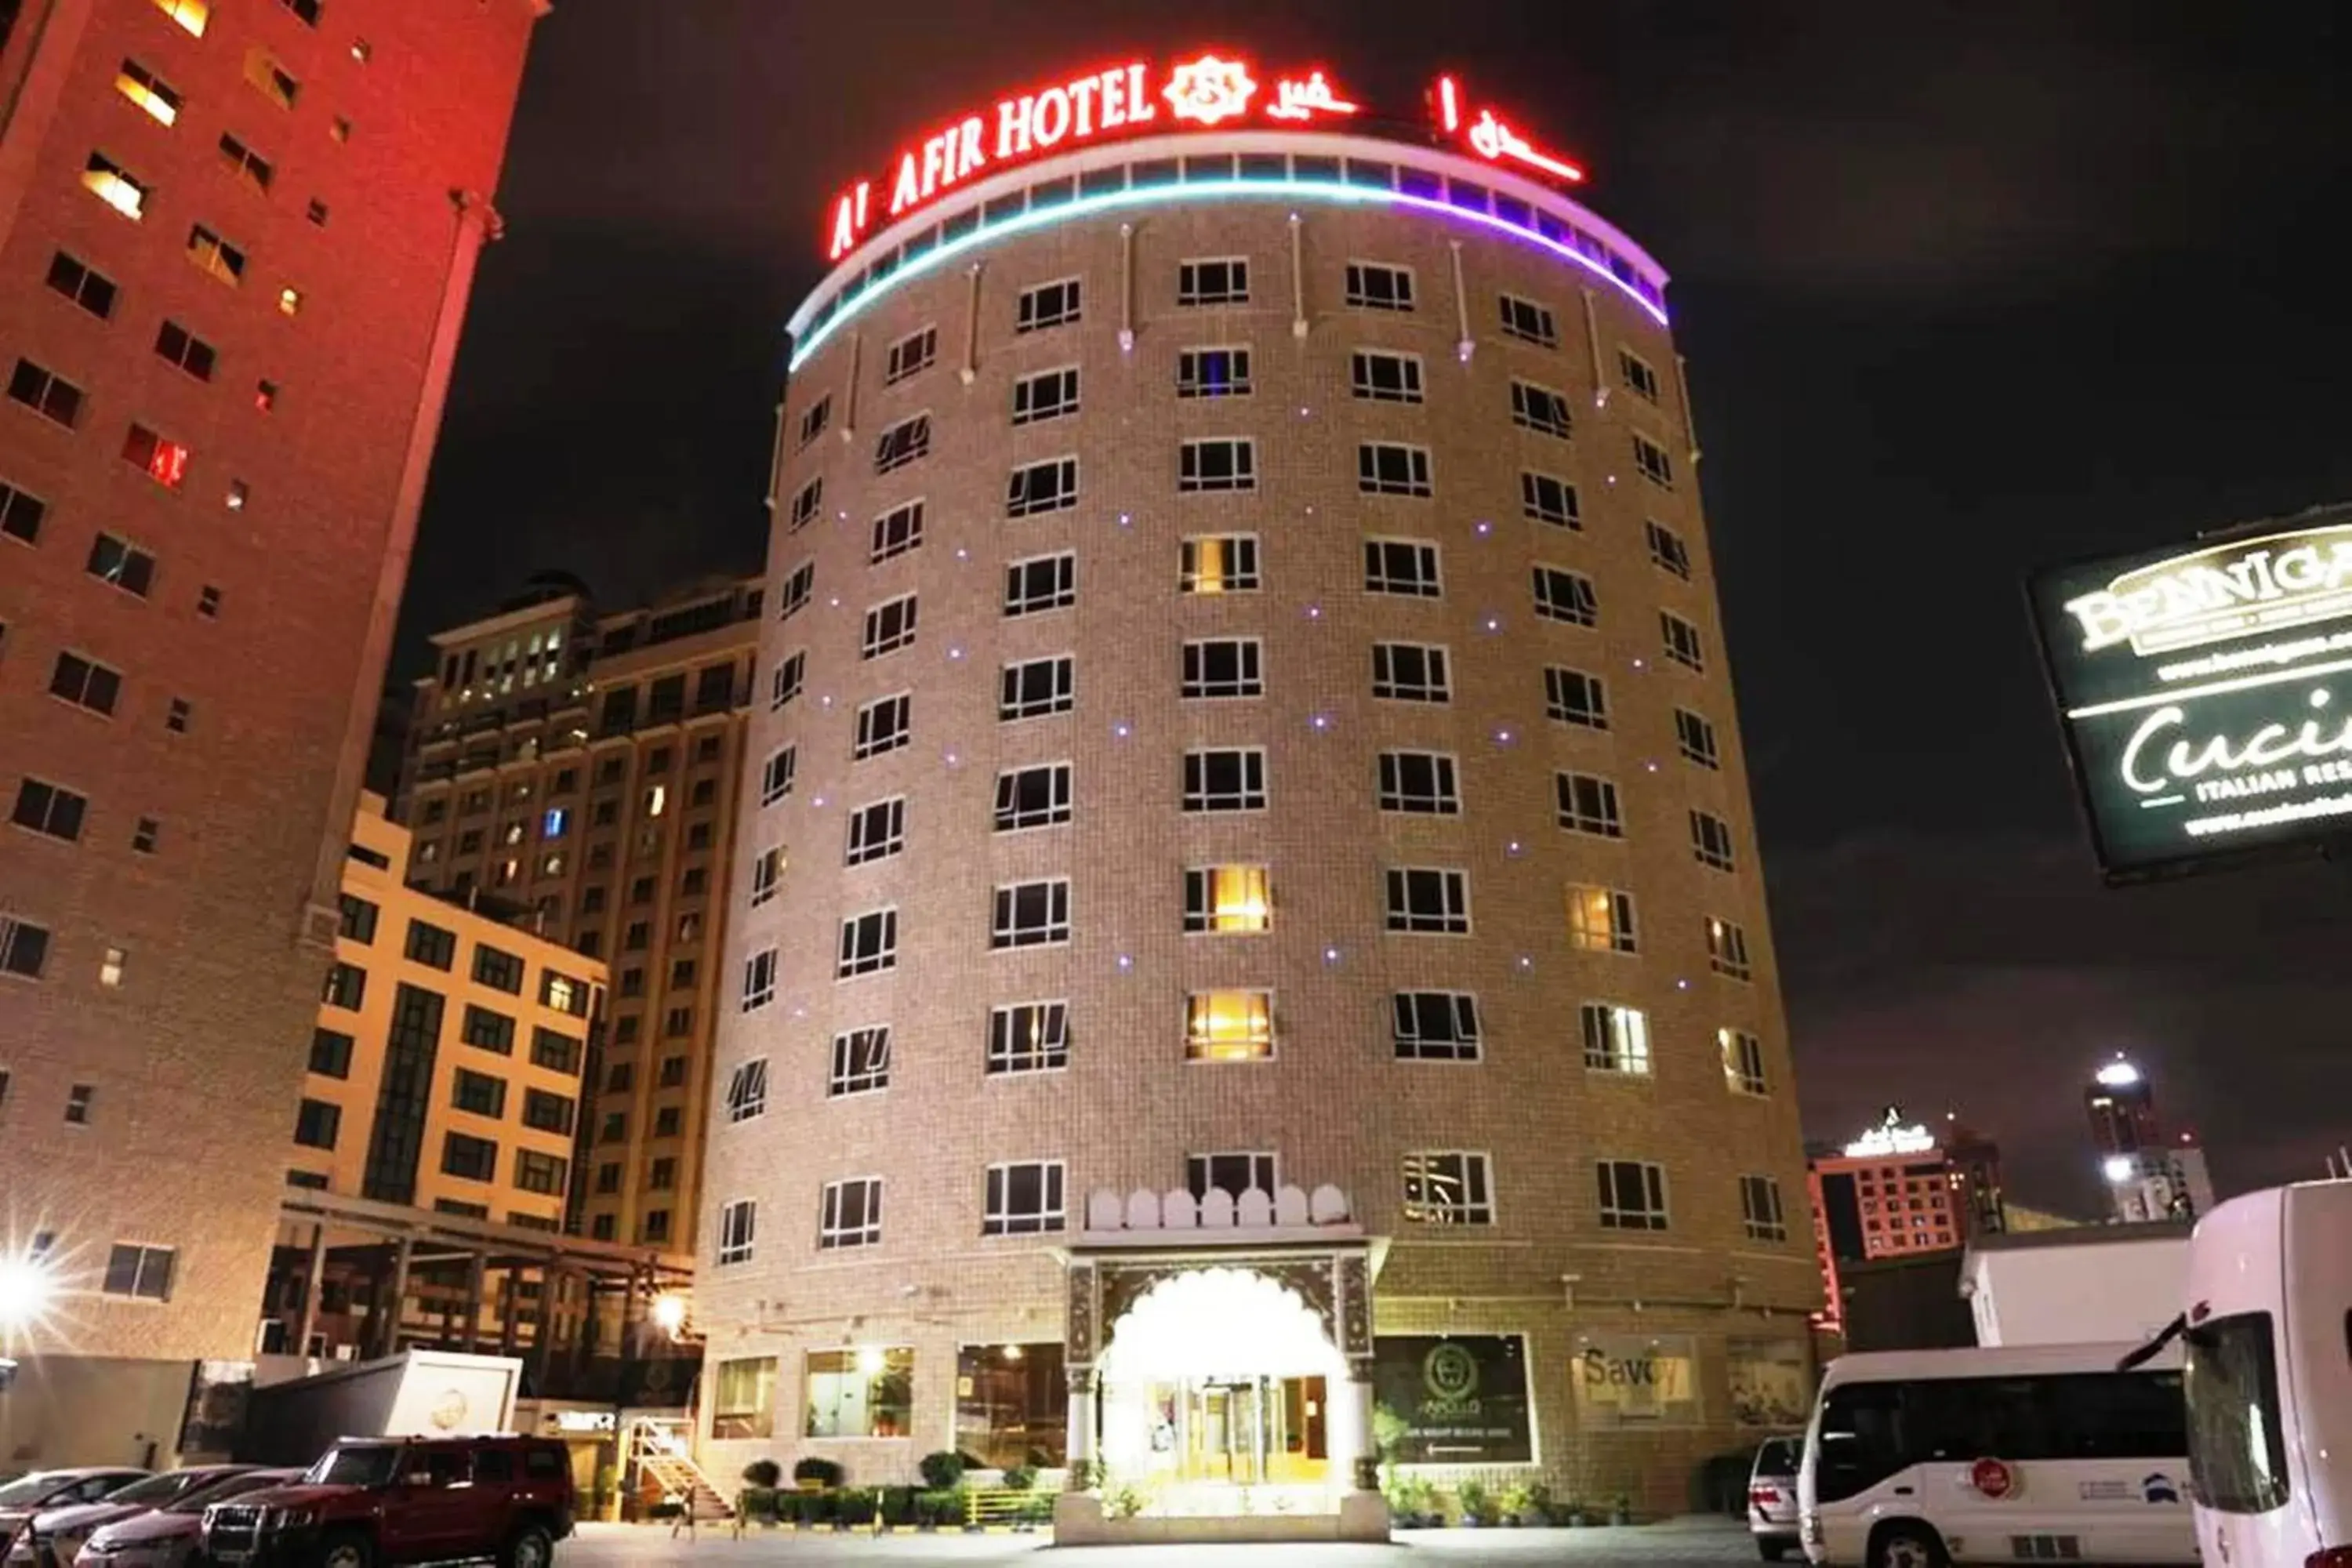 Property building in Al Safir Hotel